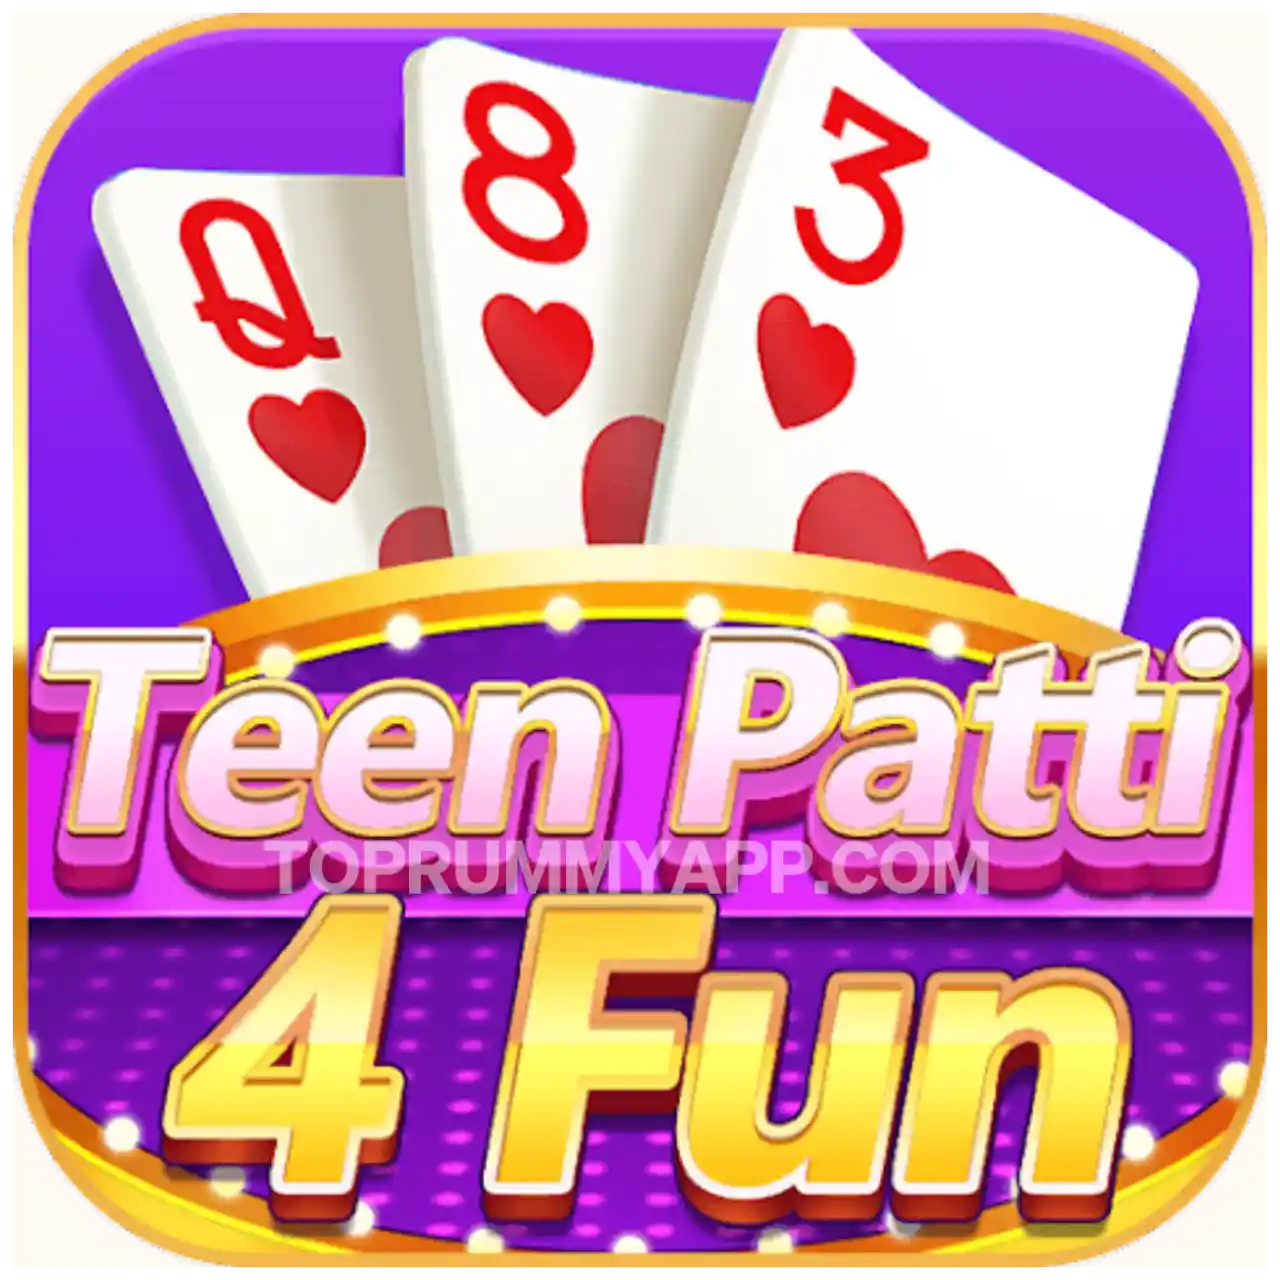 Teen Patti 4 Fun App Download Top Teen Patti App List ₹51 Bonus